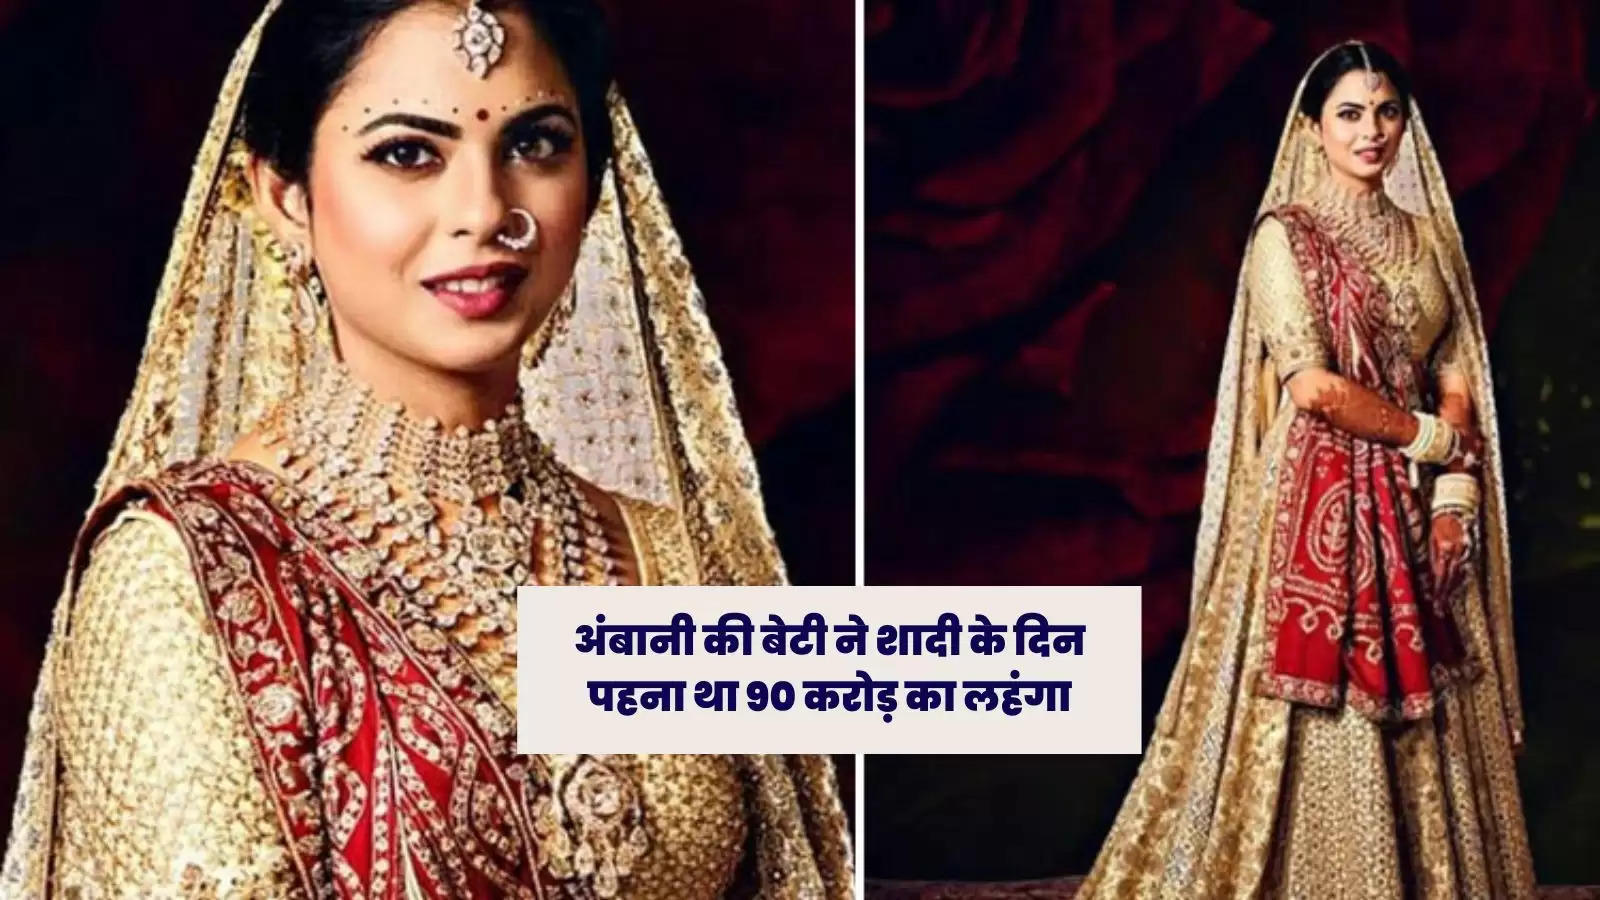 Isha Ambani Wedding Images: मुकेश अंबानी की बेटी ईशा ने शादी में पहना था 90 करोड़ का लहंगा, वेडिंग का खर्च जानकर उड़ जाएंगे होश